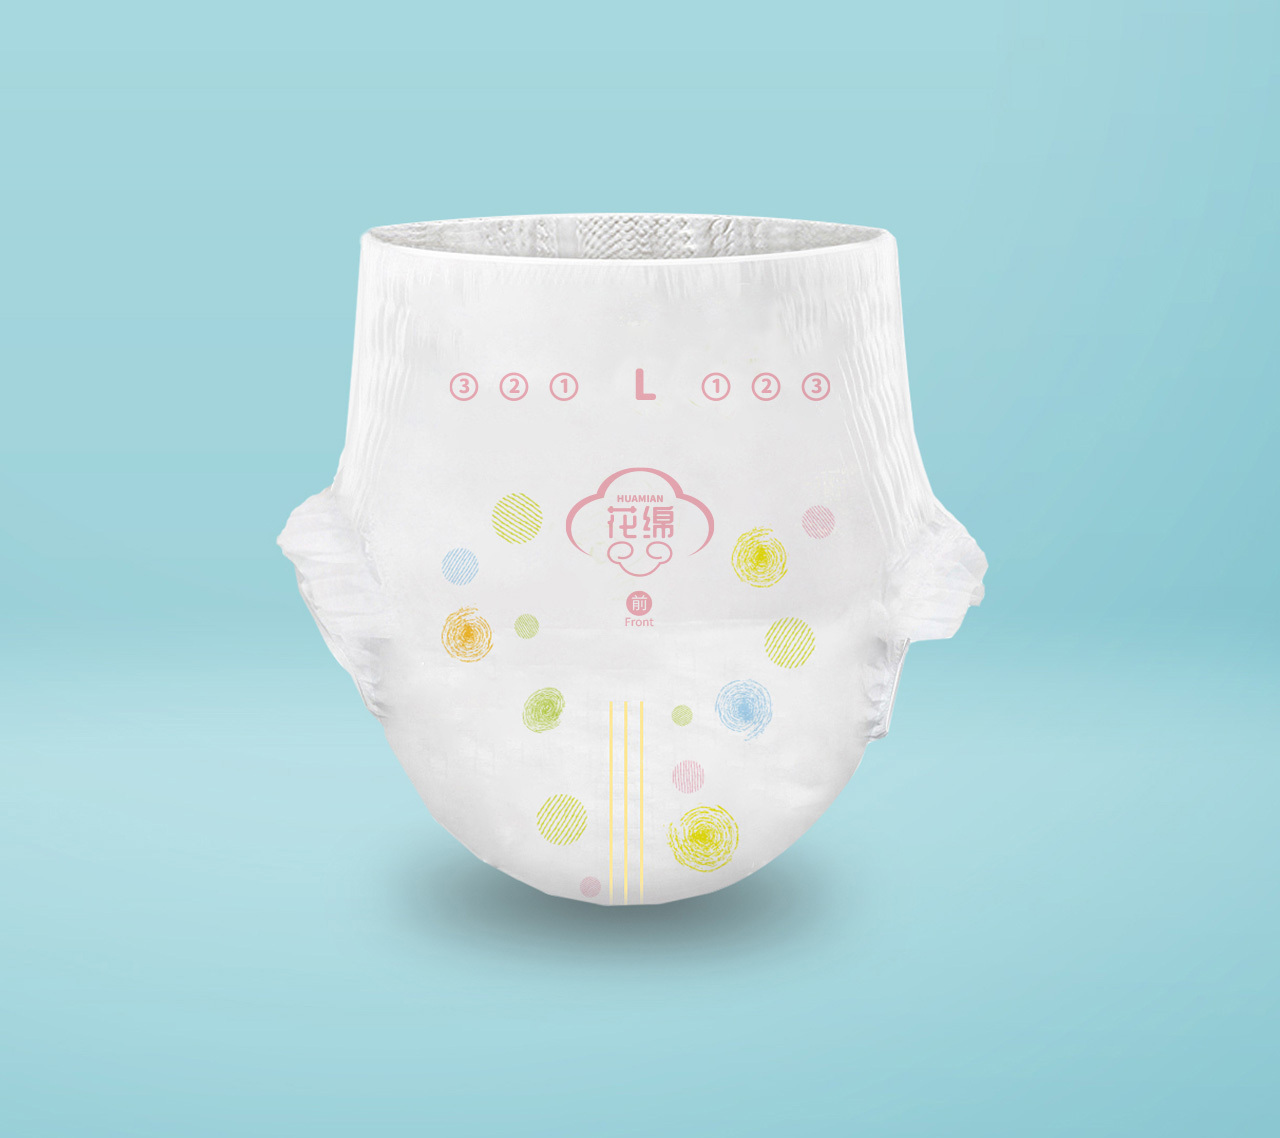 花绵婴儿纸尿裤产品包装图10